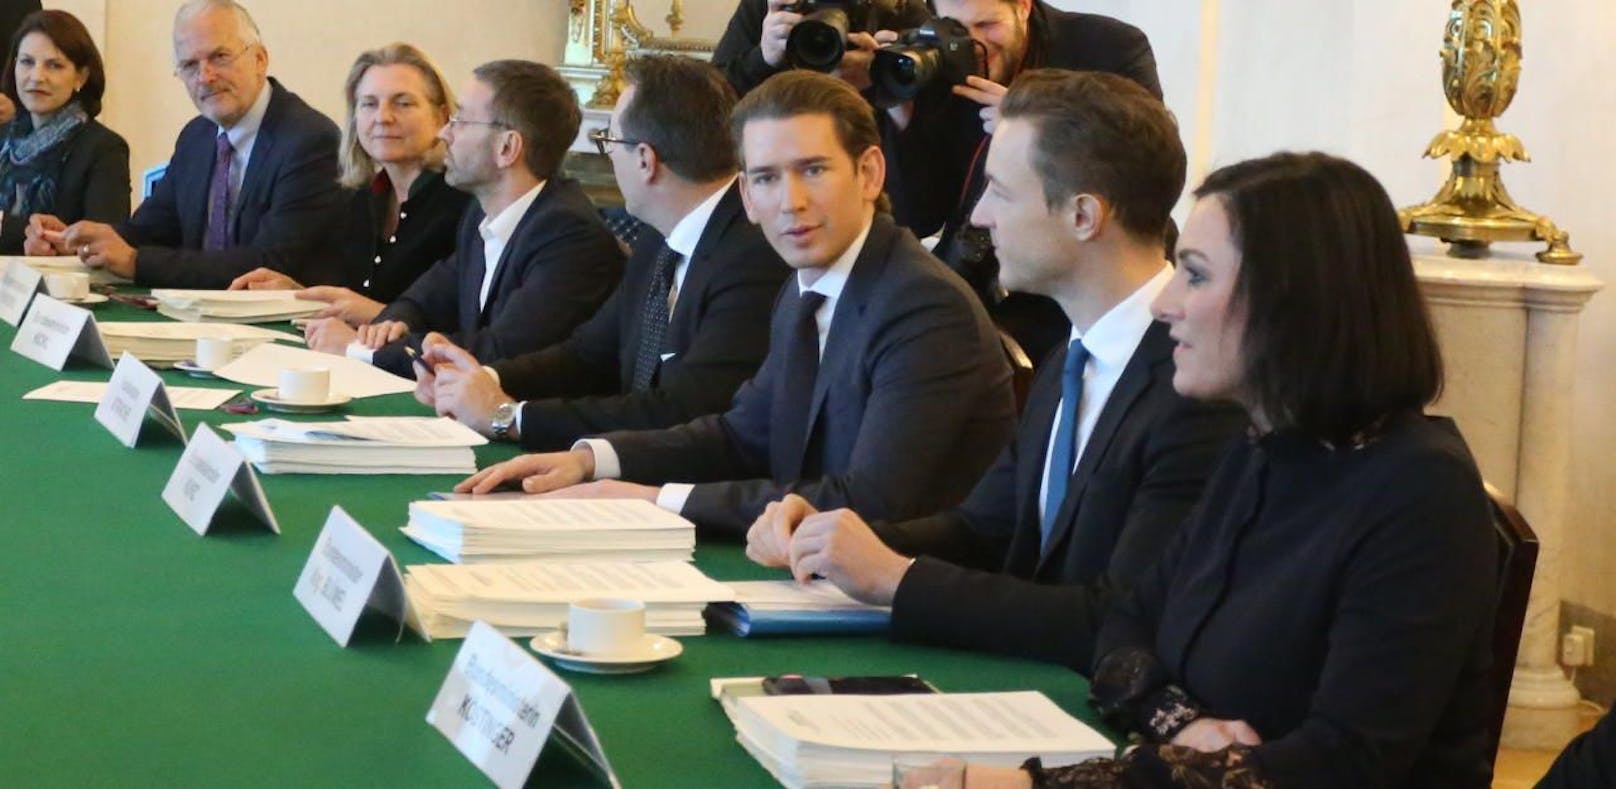 Sebastian Kurz (ÖVP) und Heinz-Christian Strache (FPÖ) bei einem Ministerrat